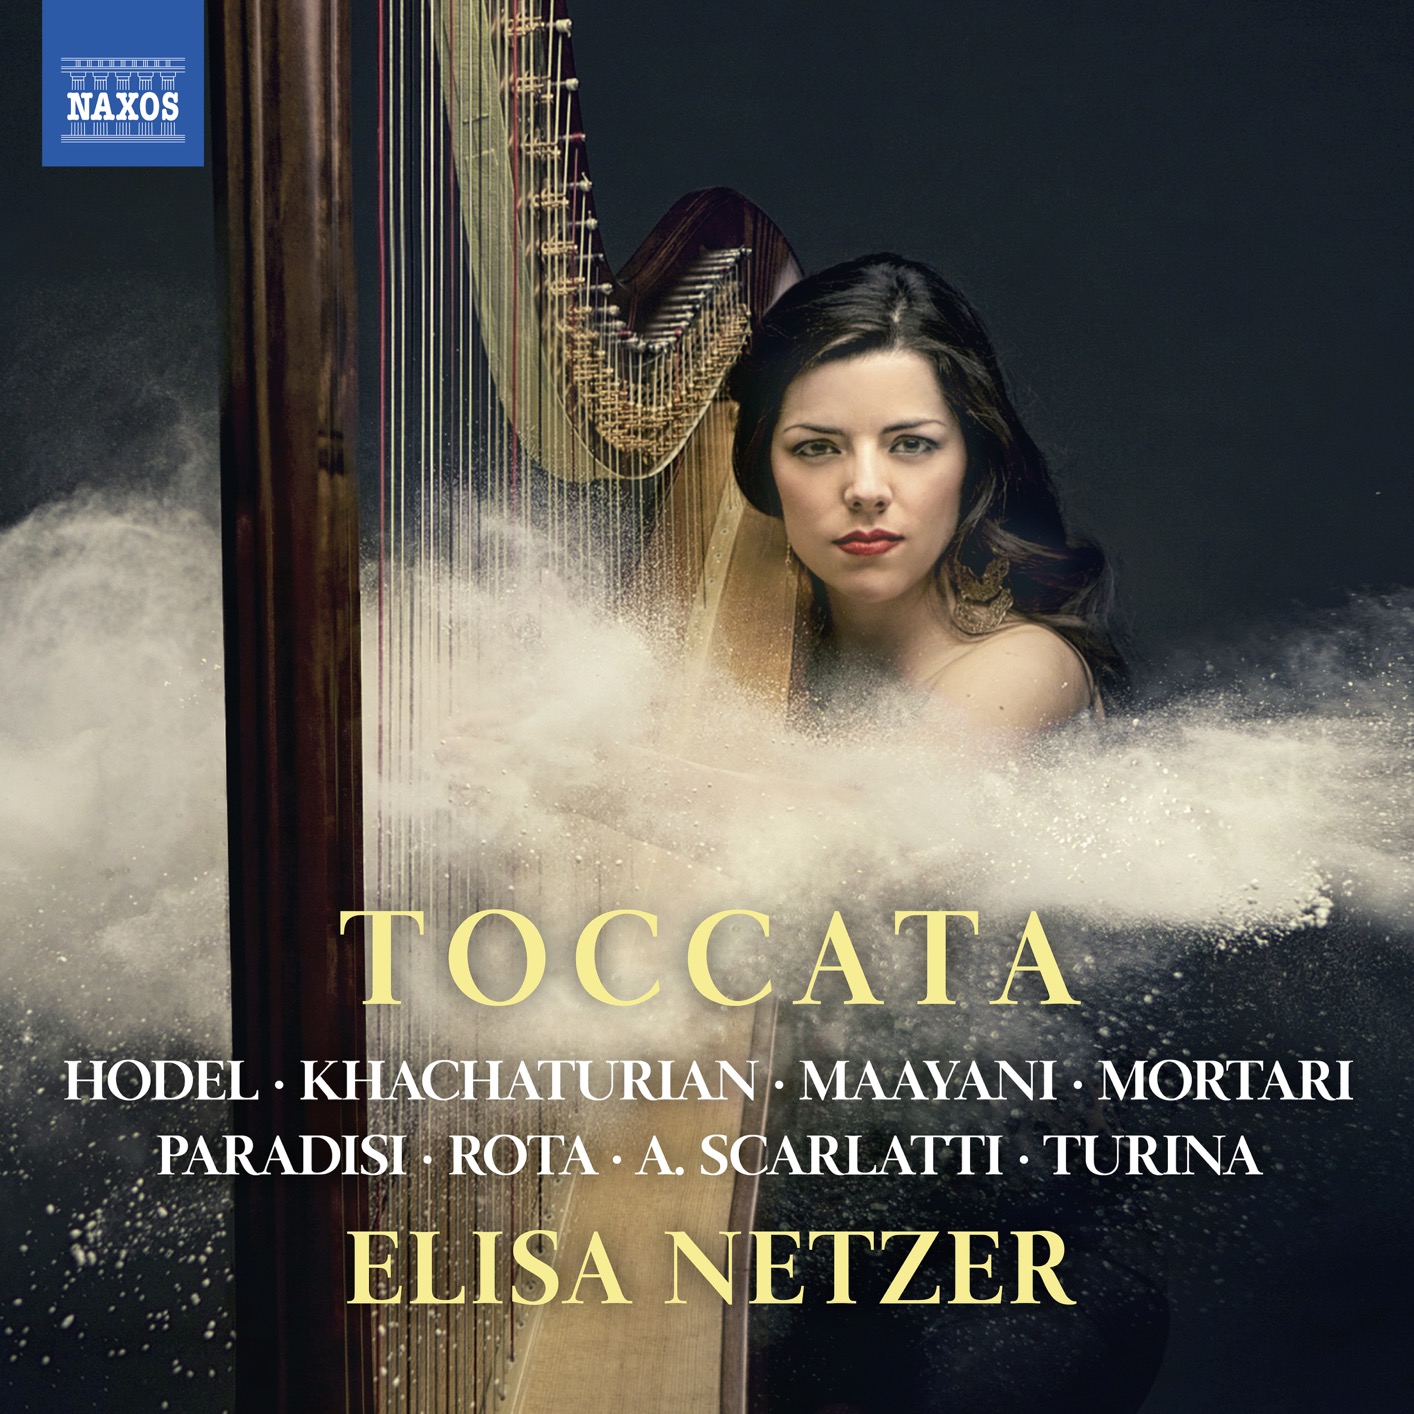 Elisa Netzer - Toccata (2018) [FLAC 24bit/96kHz]